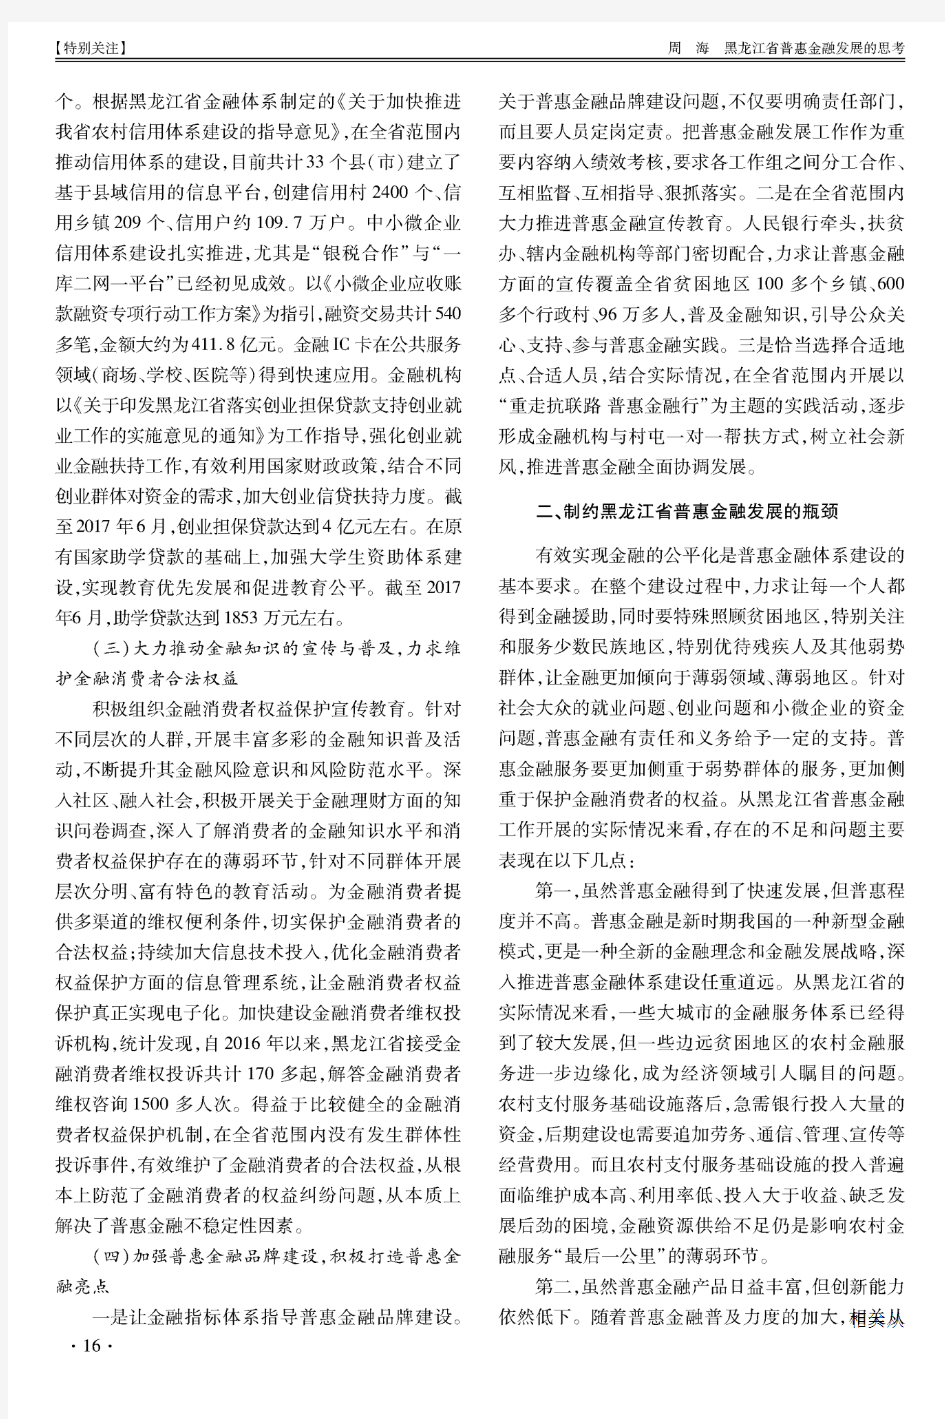 黑龙江省普惠金融发展的思考